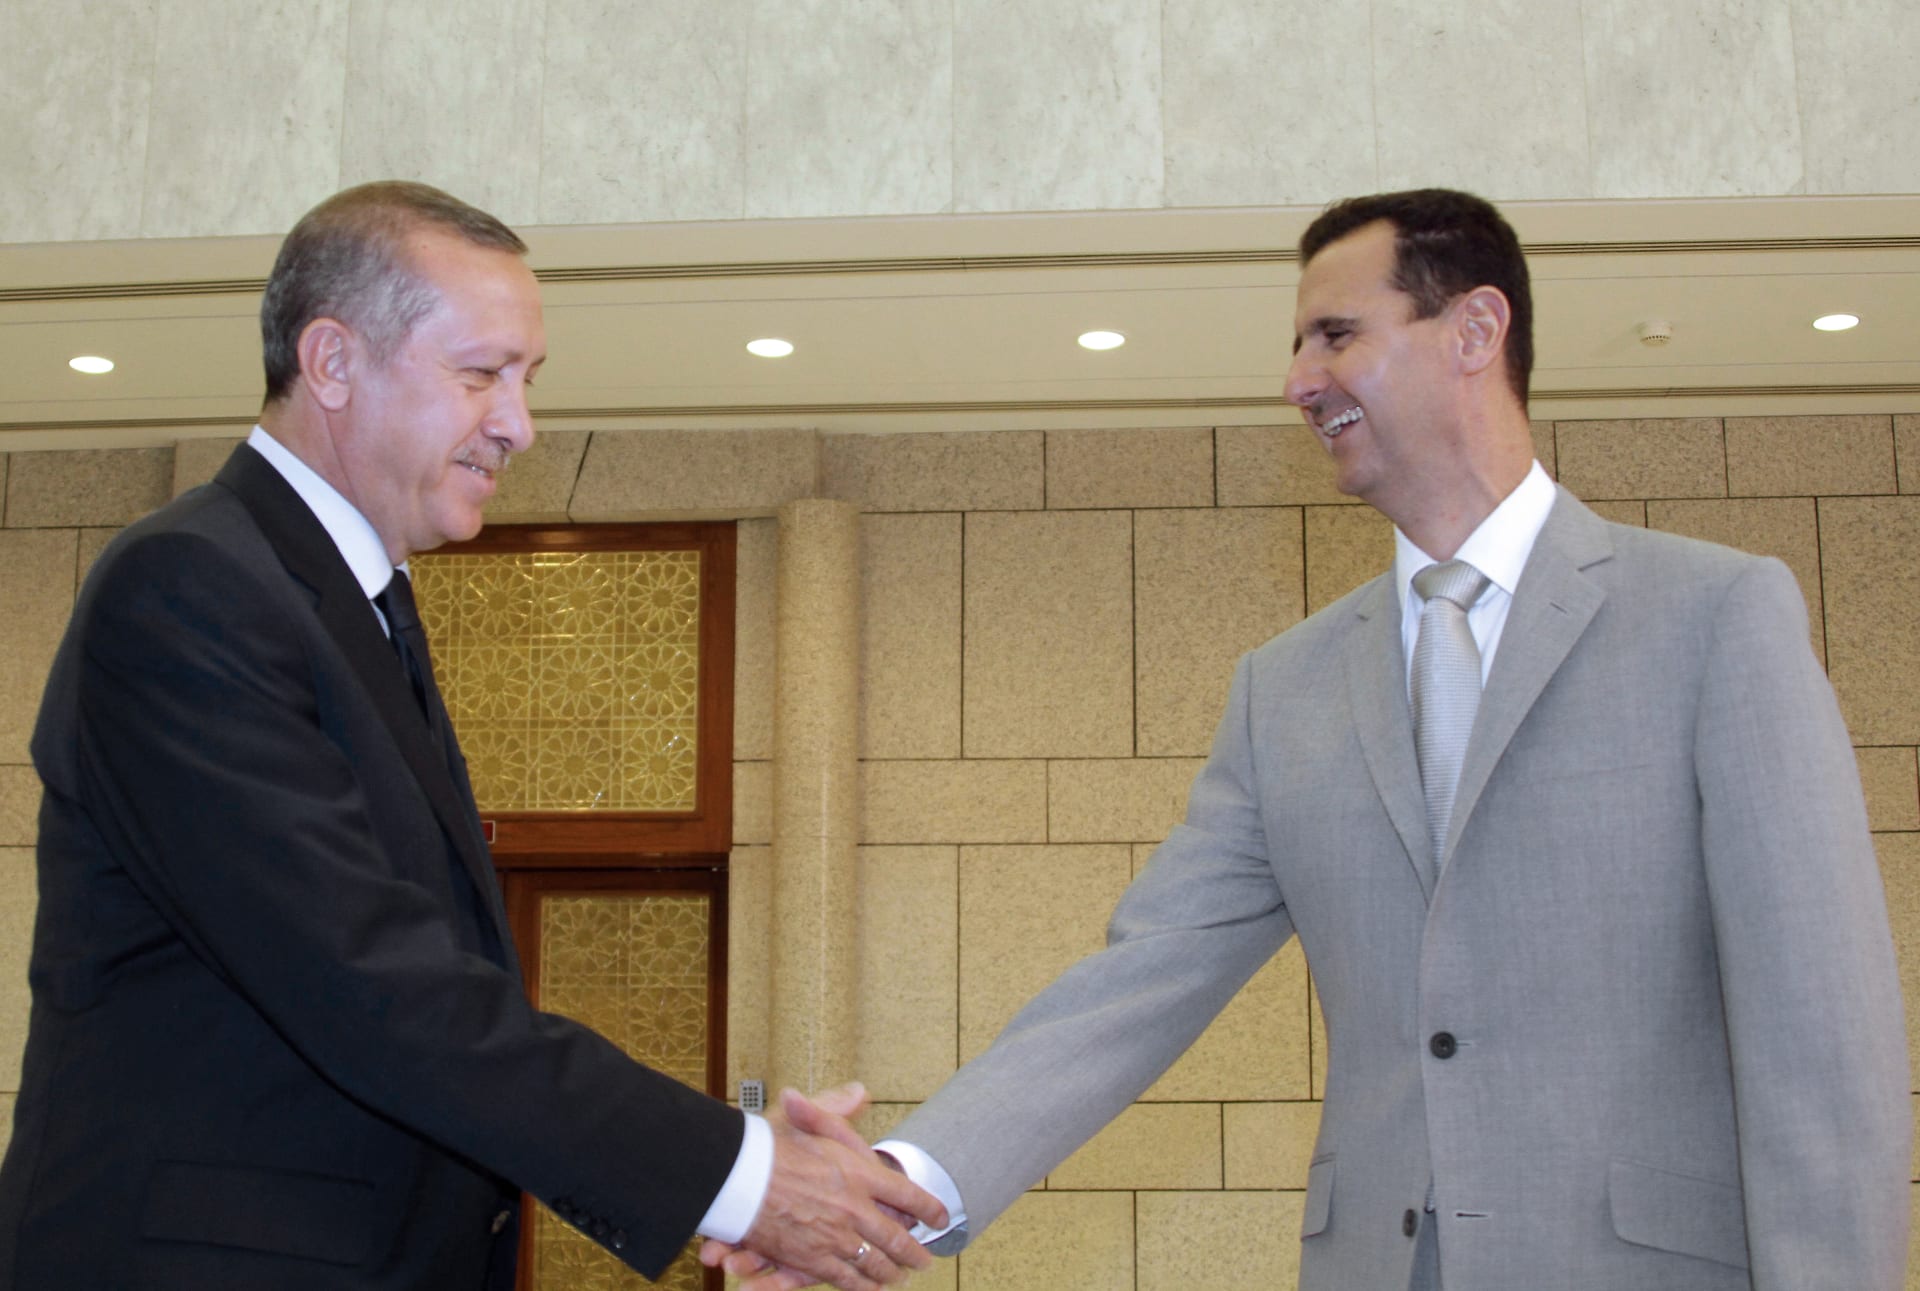 صورة أرشيفية من زيارة أردوغان إلى سوريا في أكتوبر 2010 قبل اندلاع الأزمة السورية في 2011